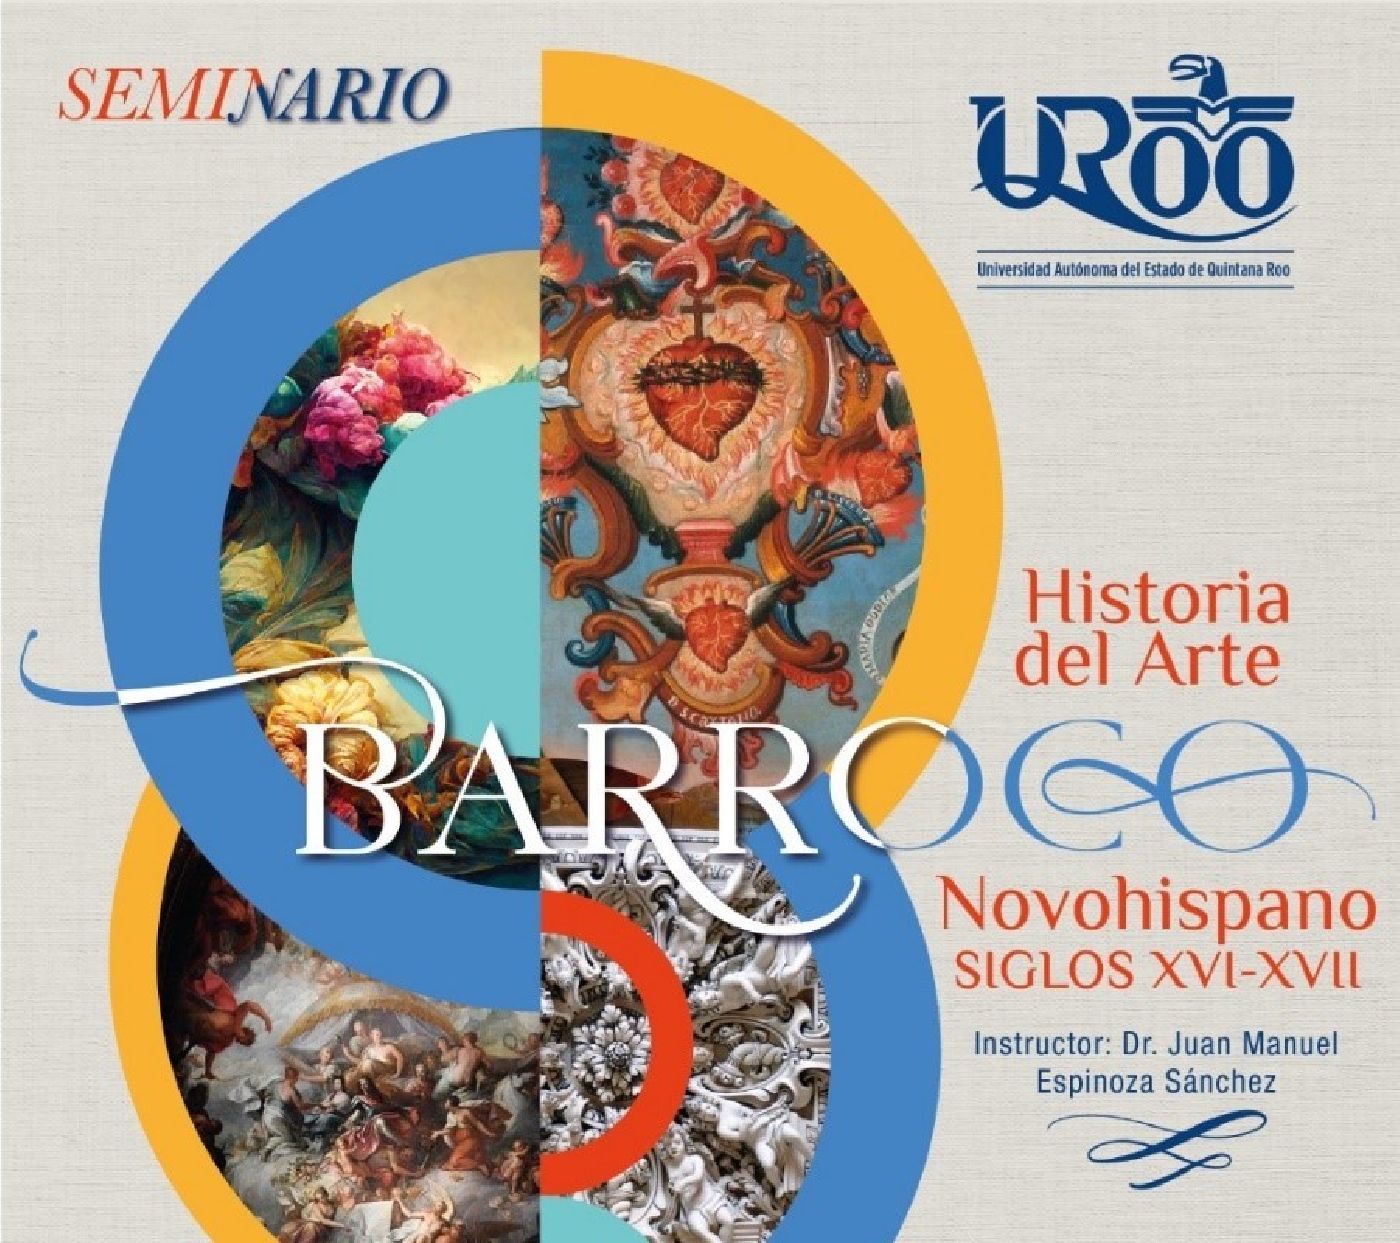 Imparten en la UQROO, curso: “Historia del Arte Barroco Novohispano Siglos XVI-XVII”